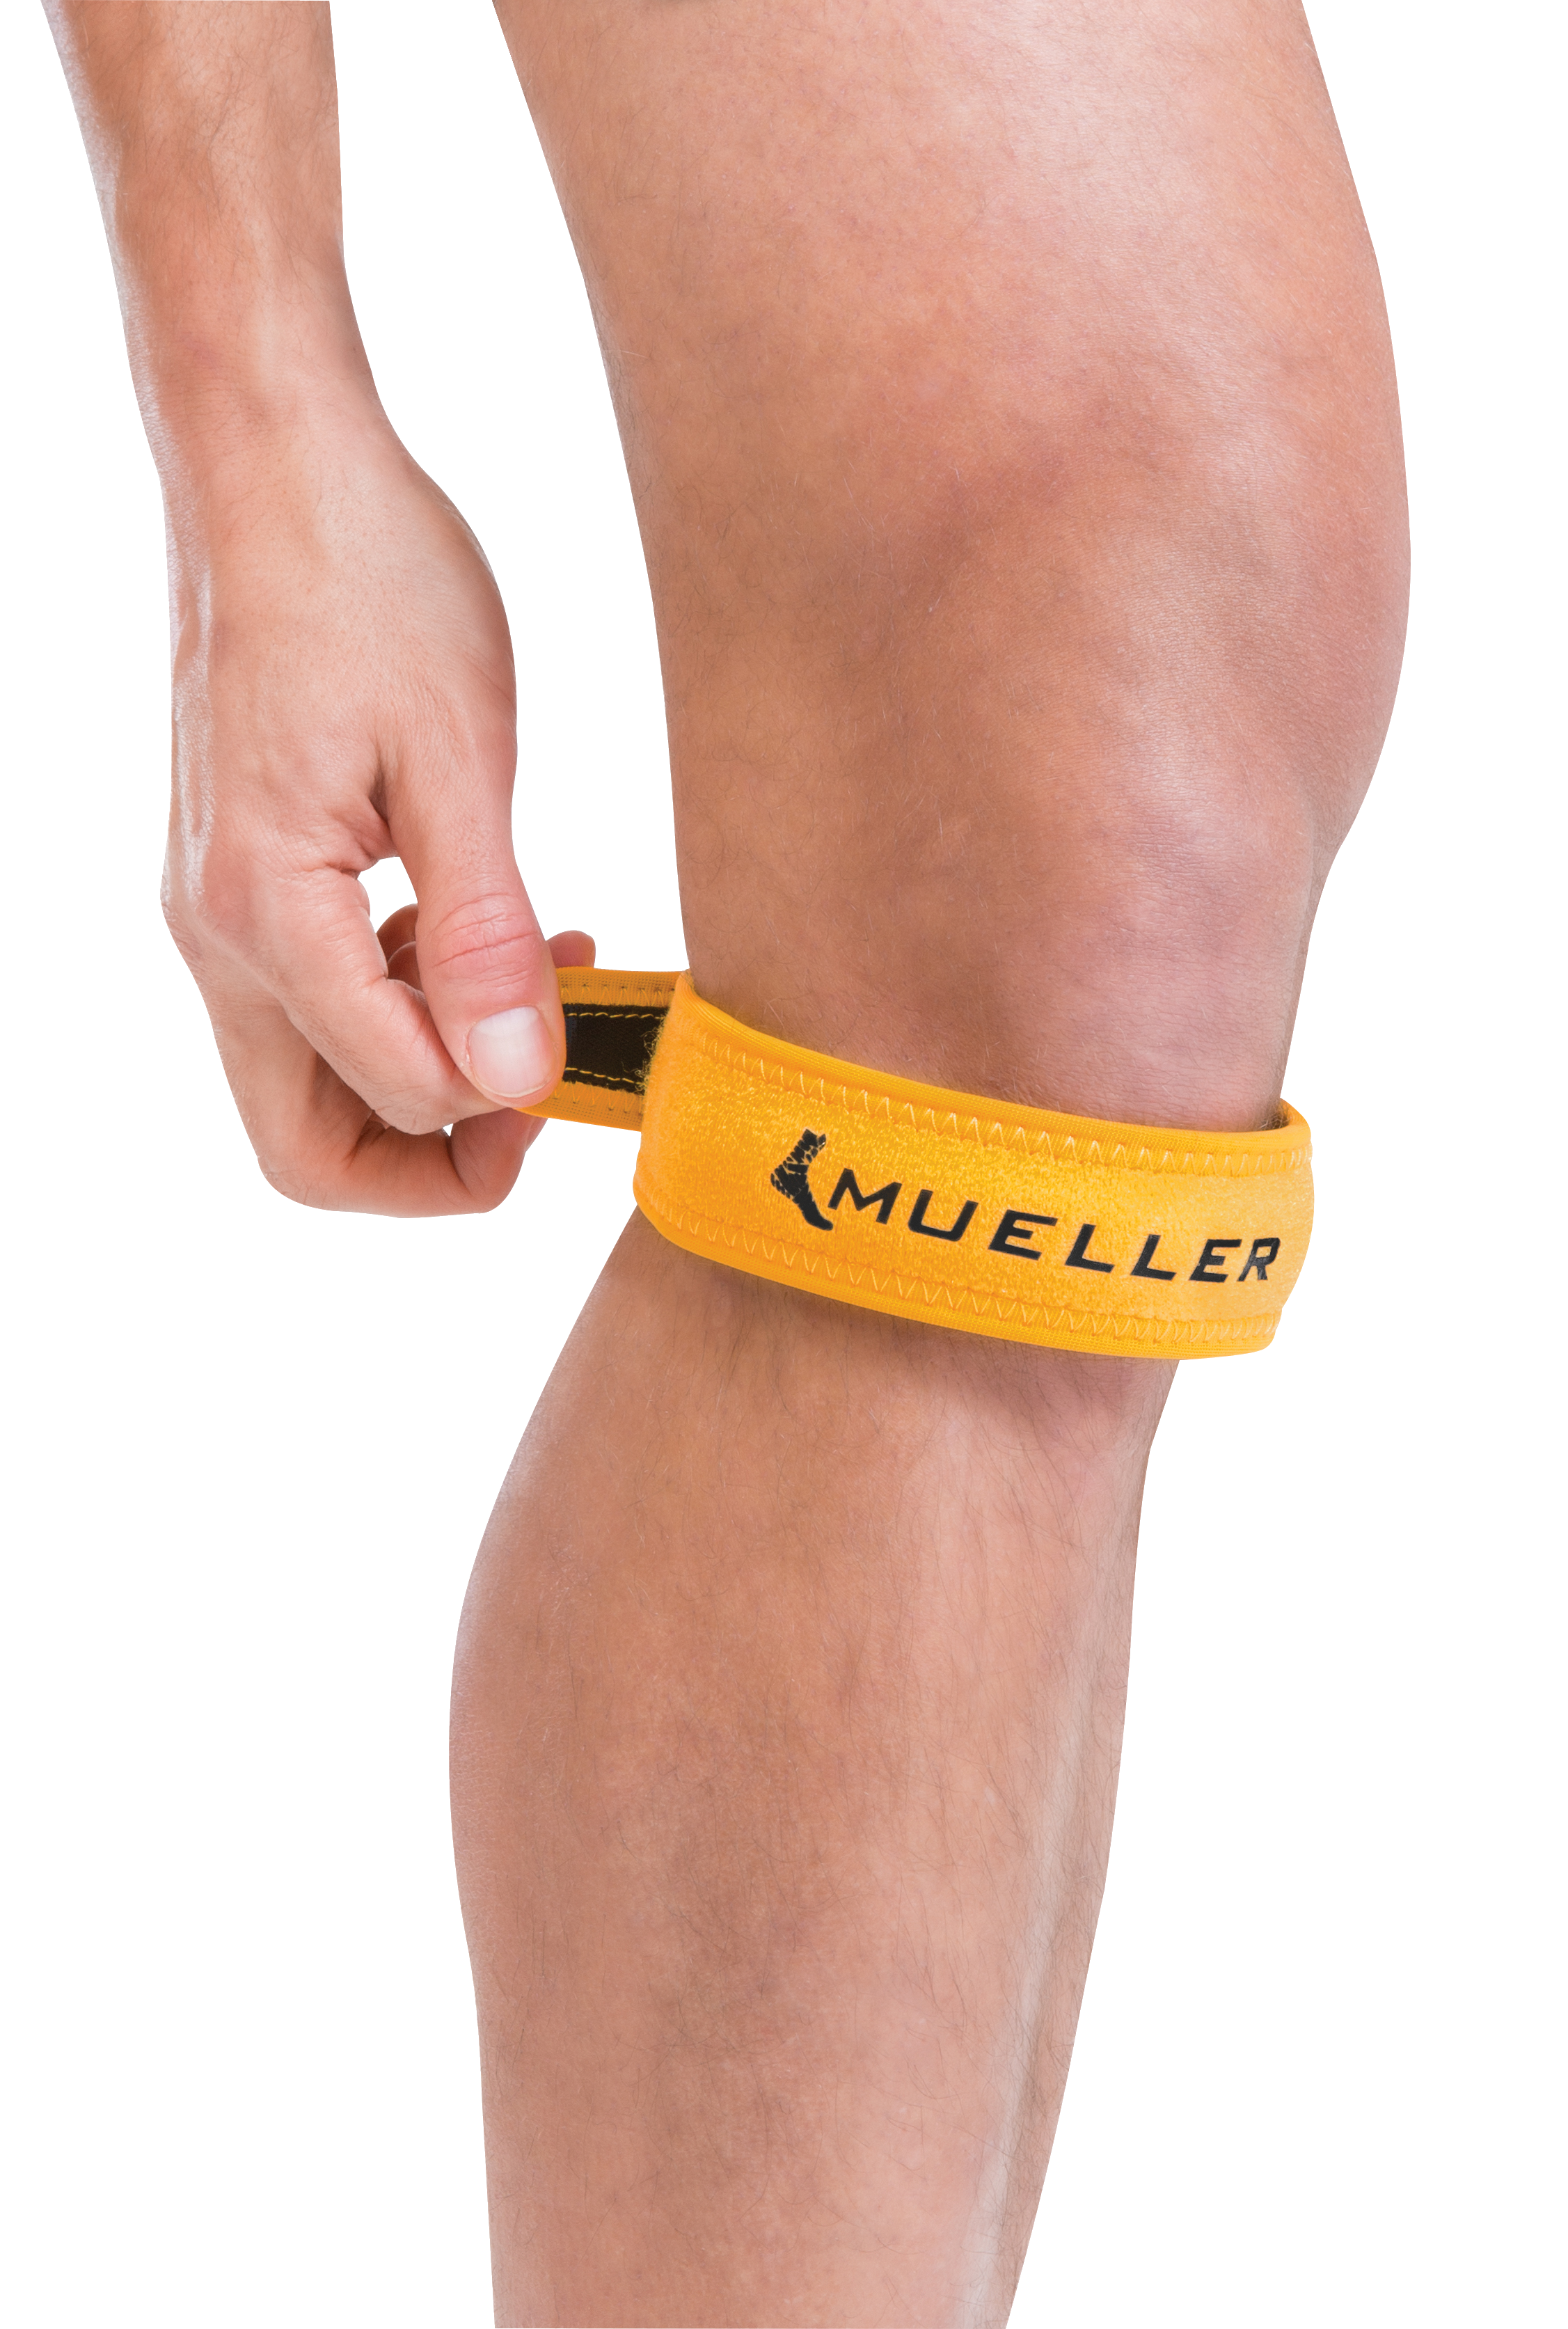 Mueller Jumper's Knee Strape 54997 Gelb Demonstration am Knie